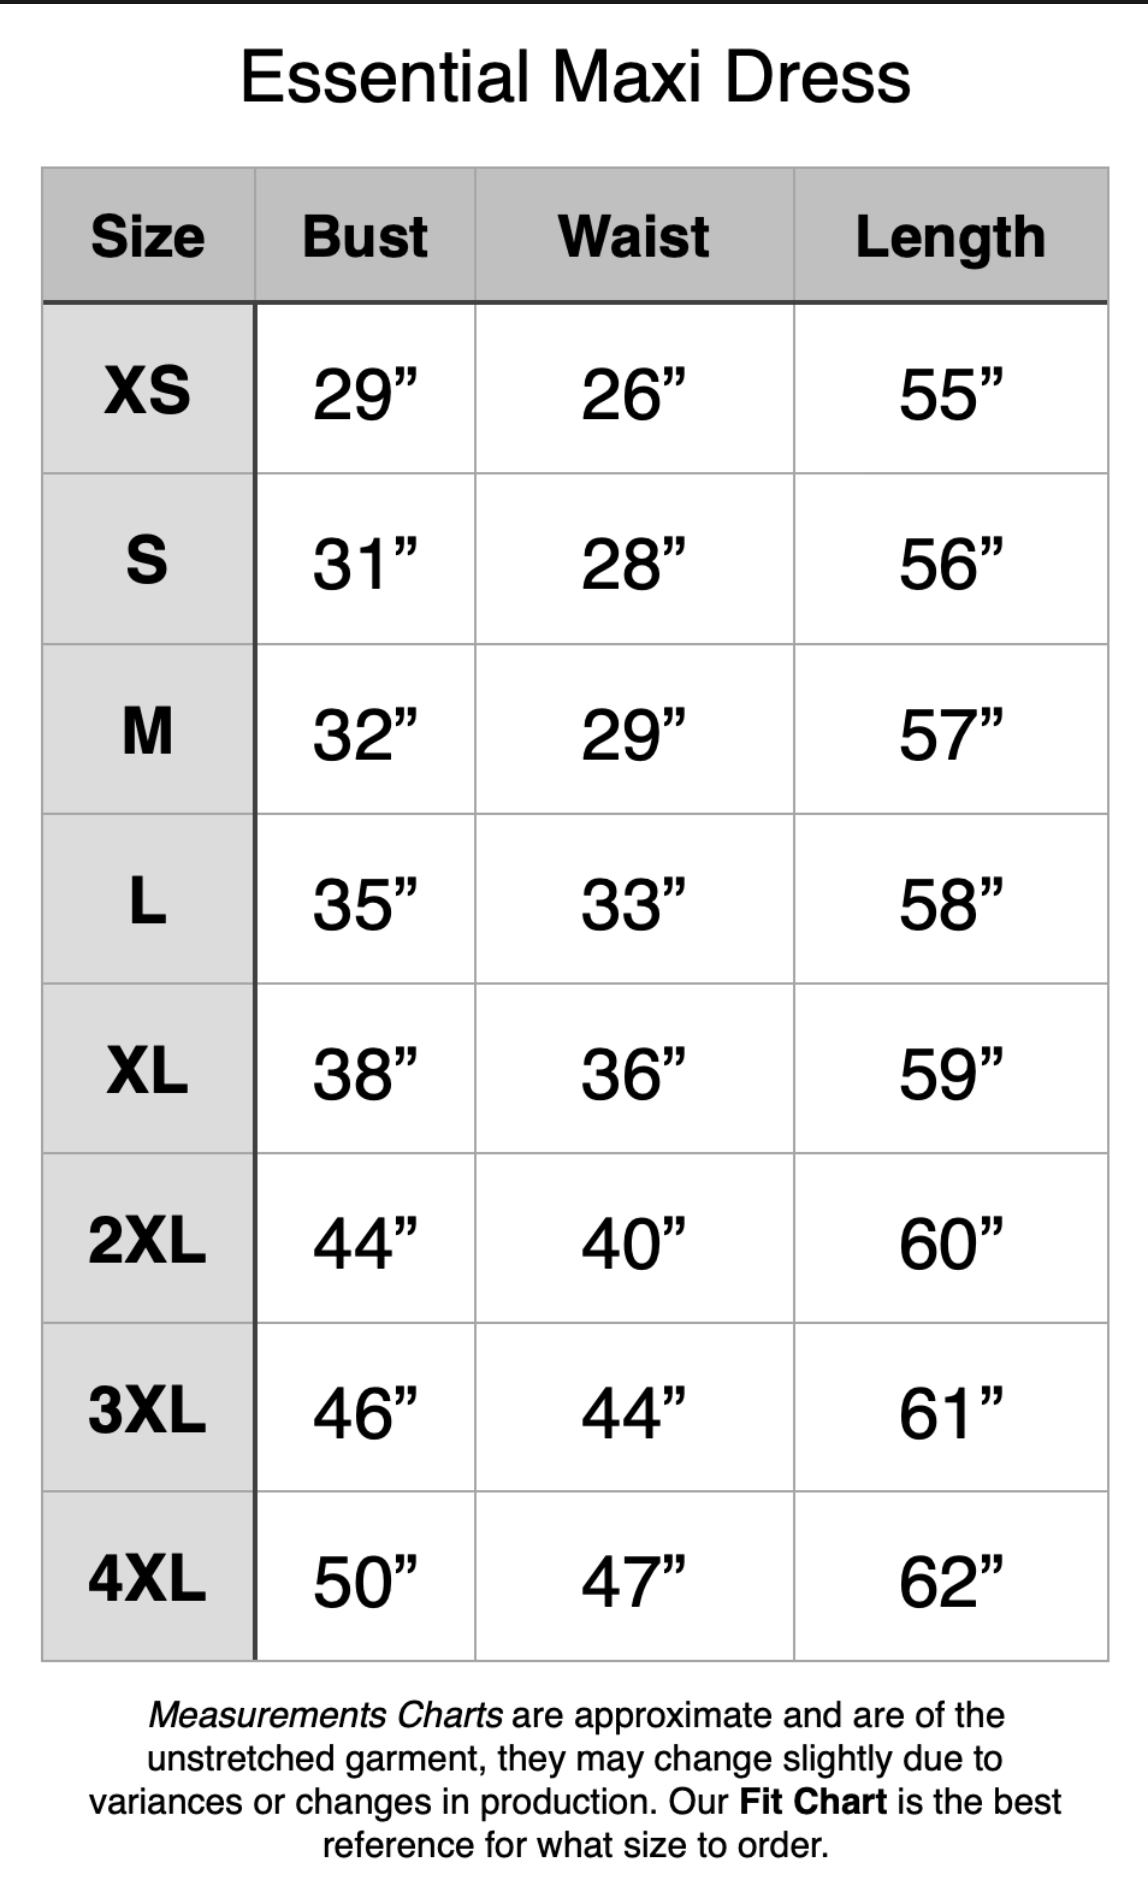 Essential Maxi Dress - XS: 29" Bust, 26" Waist, 55" Length. S: 31" Bust, 28" Waist, 56" Length. M: 32" Bust, 29" Waist, 57" Length. L: 35" Bust, 33" Waist, 58" Length. XL: 38" Bust, 36" Waist, 59" Length. 2XL: 44" Bust, 40" Waist, 60" Length. 3XL: 46" Bust, 44" Waist, 61" Length. 4XL: 50" Bust, 47" Waist, 62" Length.